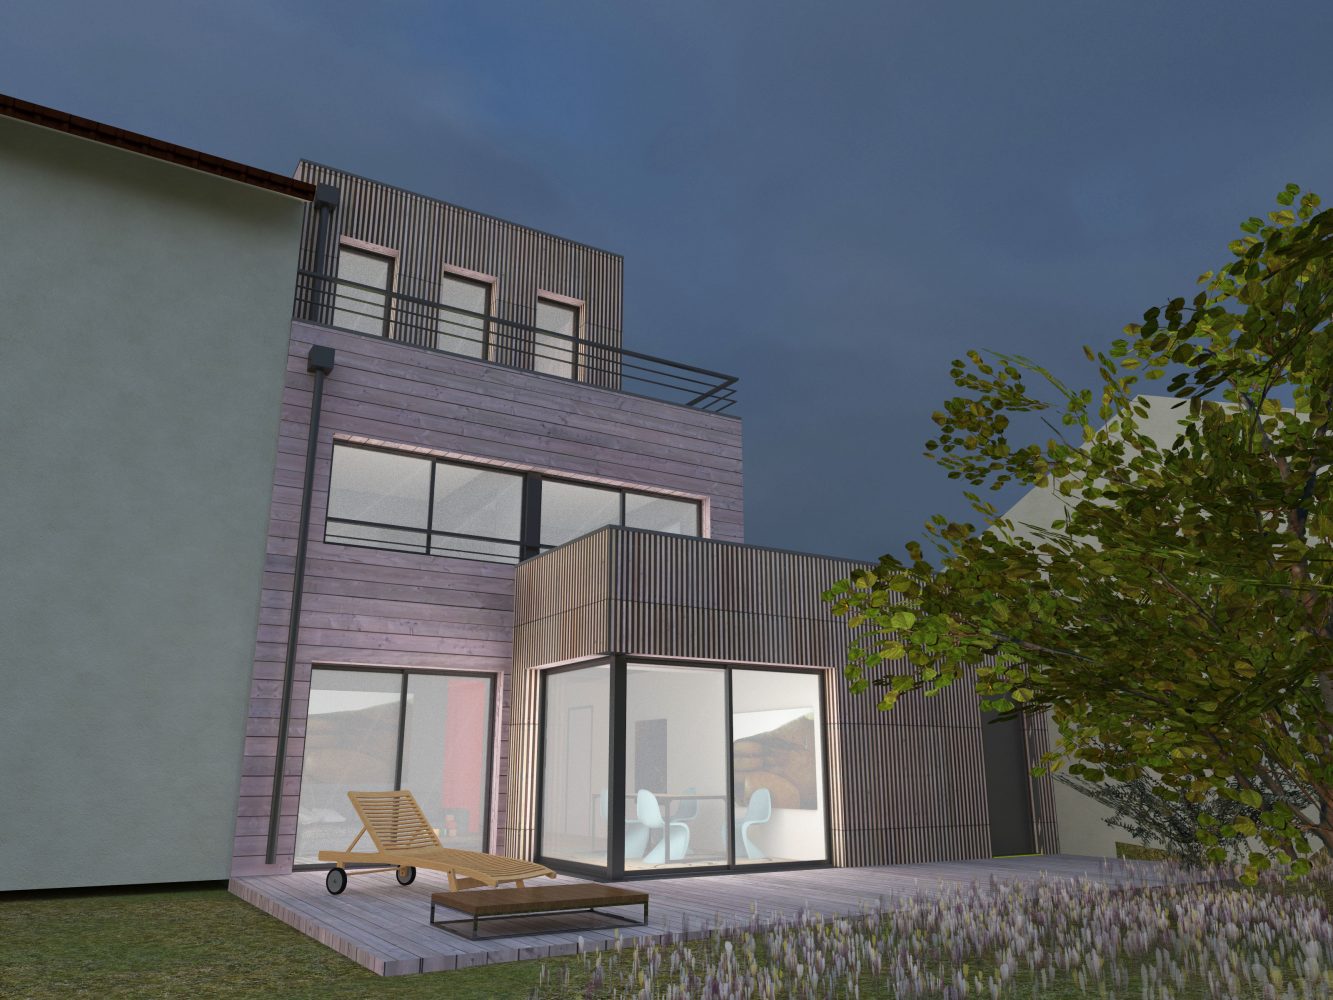 Philippe_Zerbib_Architecte_construction_maisons_ossature_bois_projet_maison-Vollaire-View 40_12